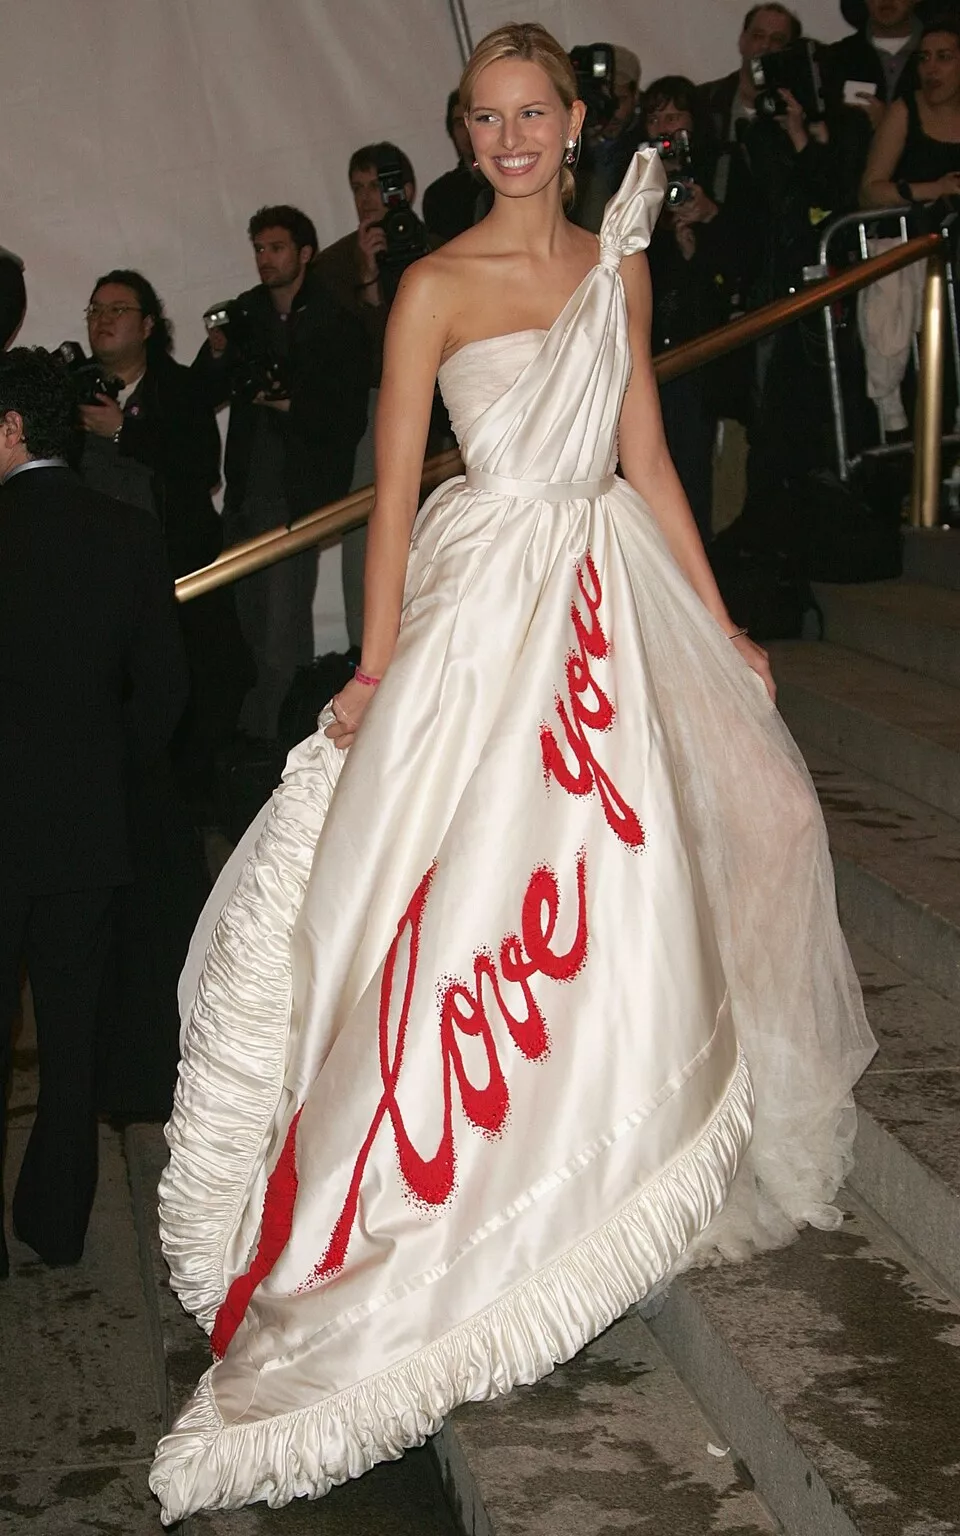 Karolina Kurkova se sumó a la MET Gala con este vestido blanco en el que se leía "I love you". El tema ese año fue The House of Chanel.